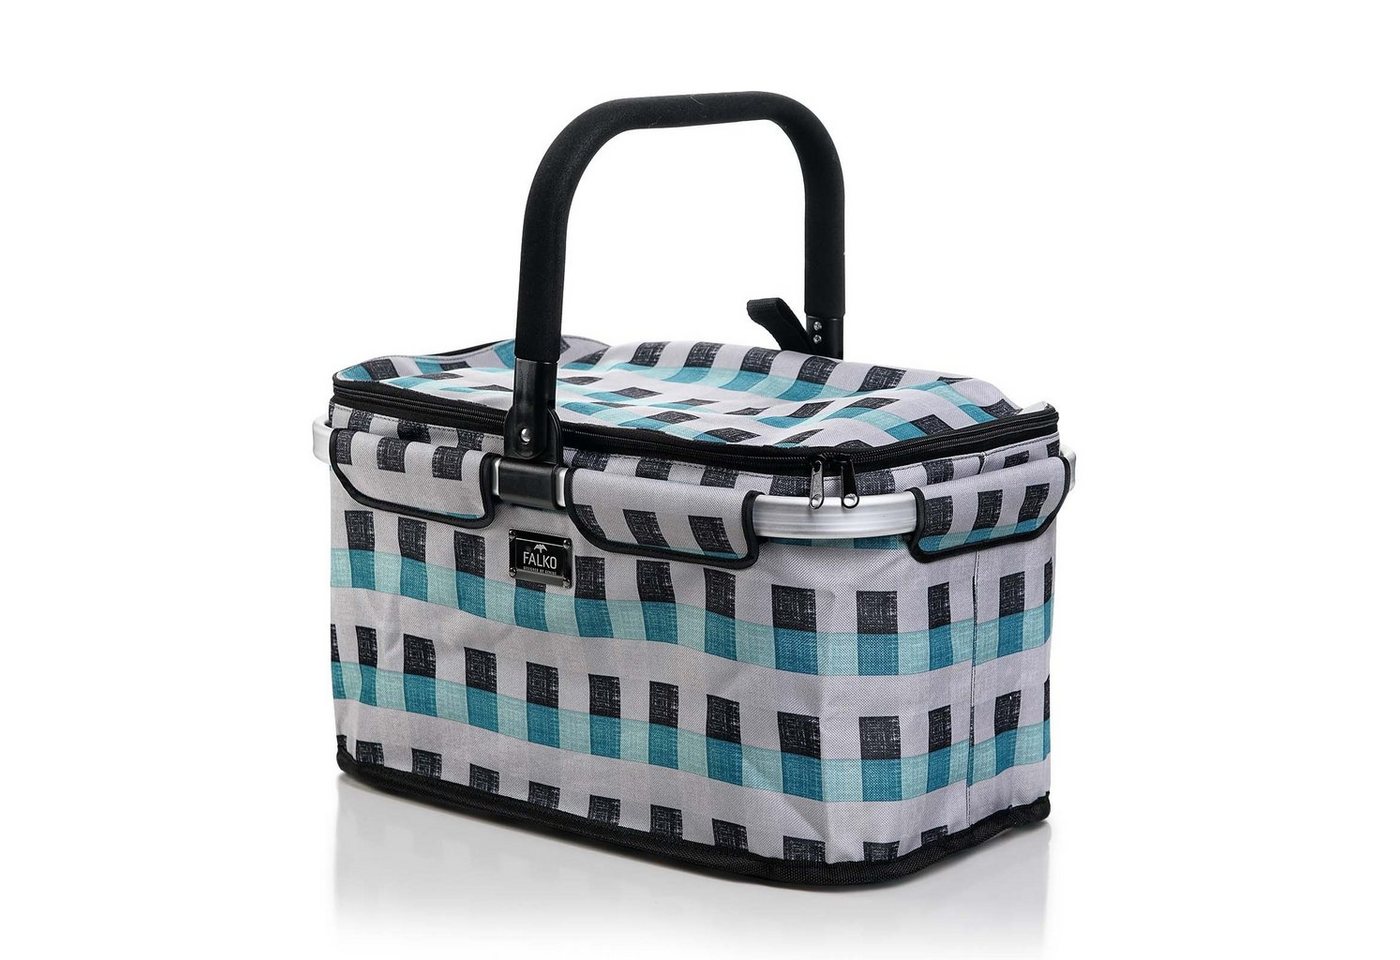 Genius Einkaufskorb Falko Premium Tragekorb Picknickkorb, Lunchkorb Shopping Bag 22 L für Ausflug Camping von Genius